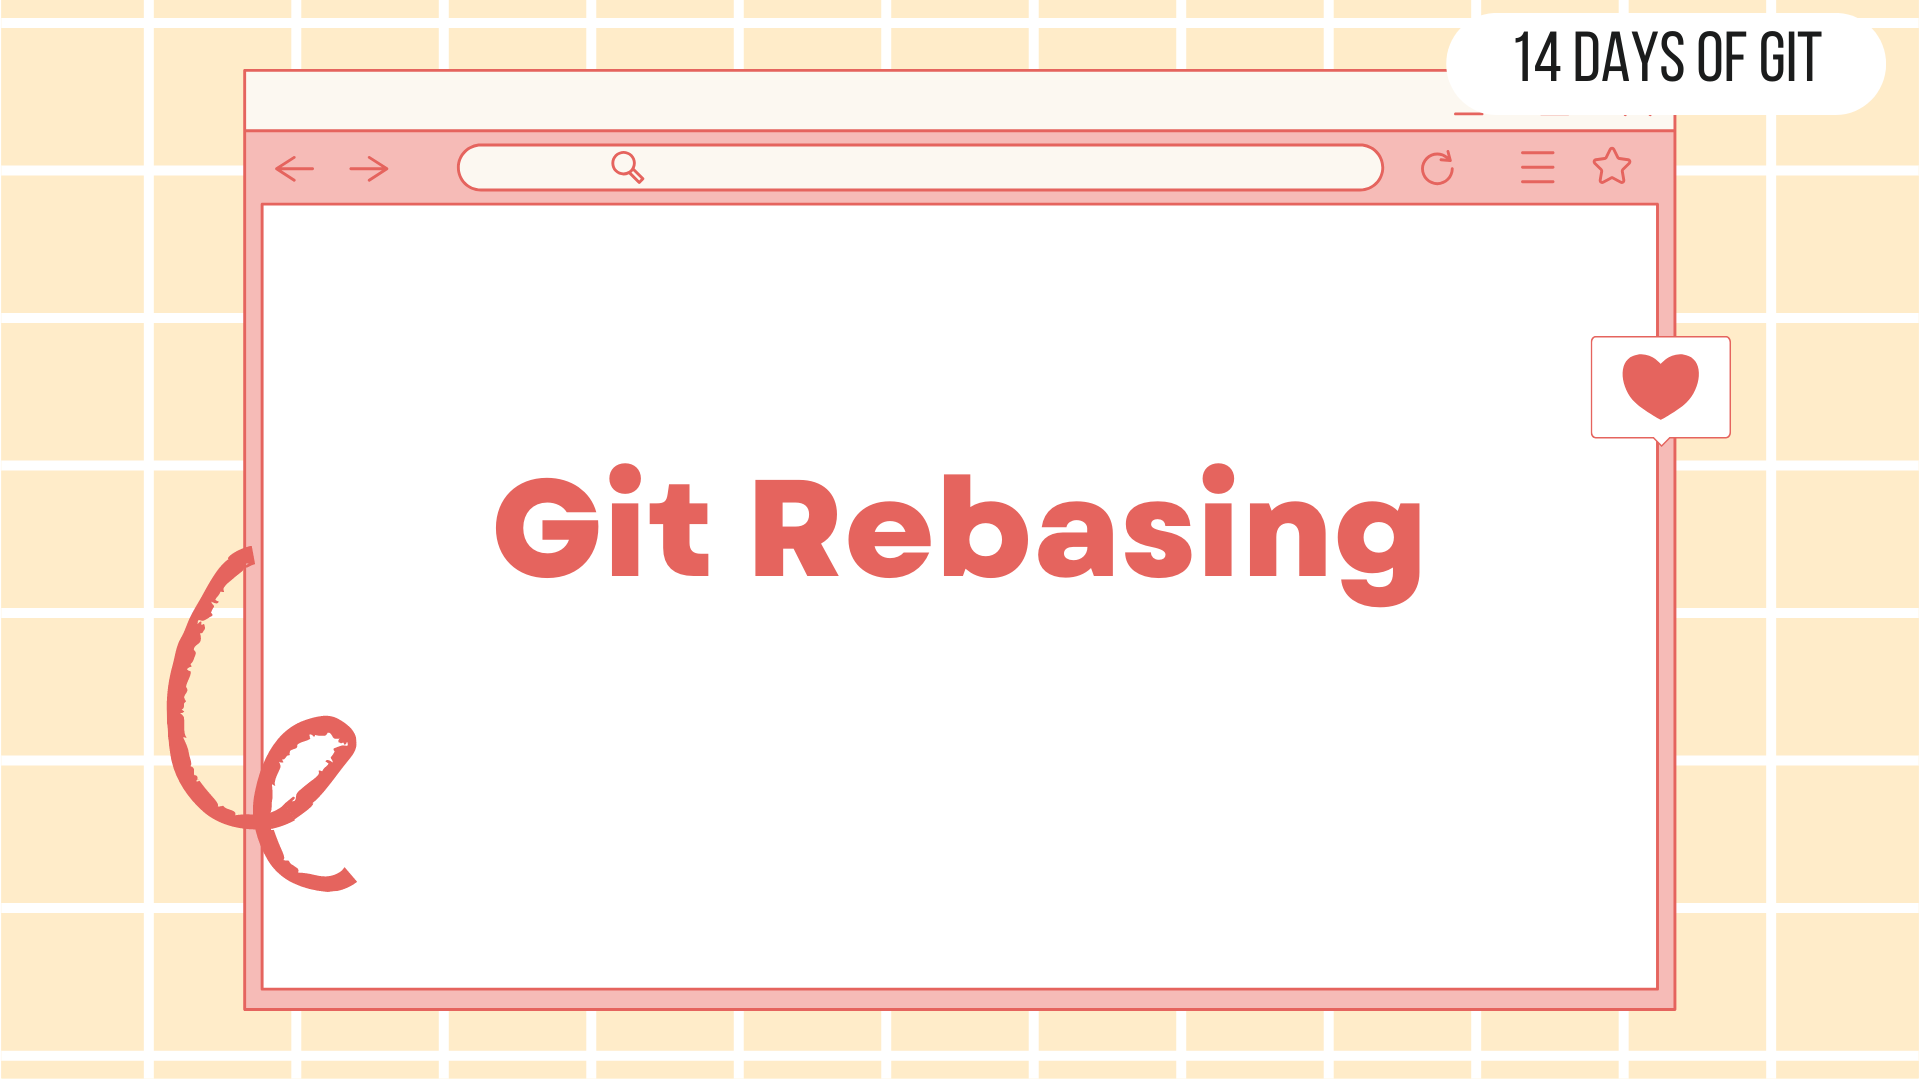 Git Rebasing